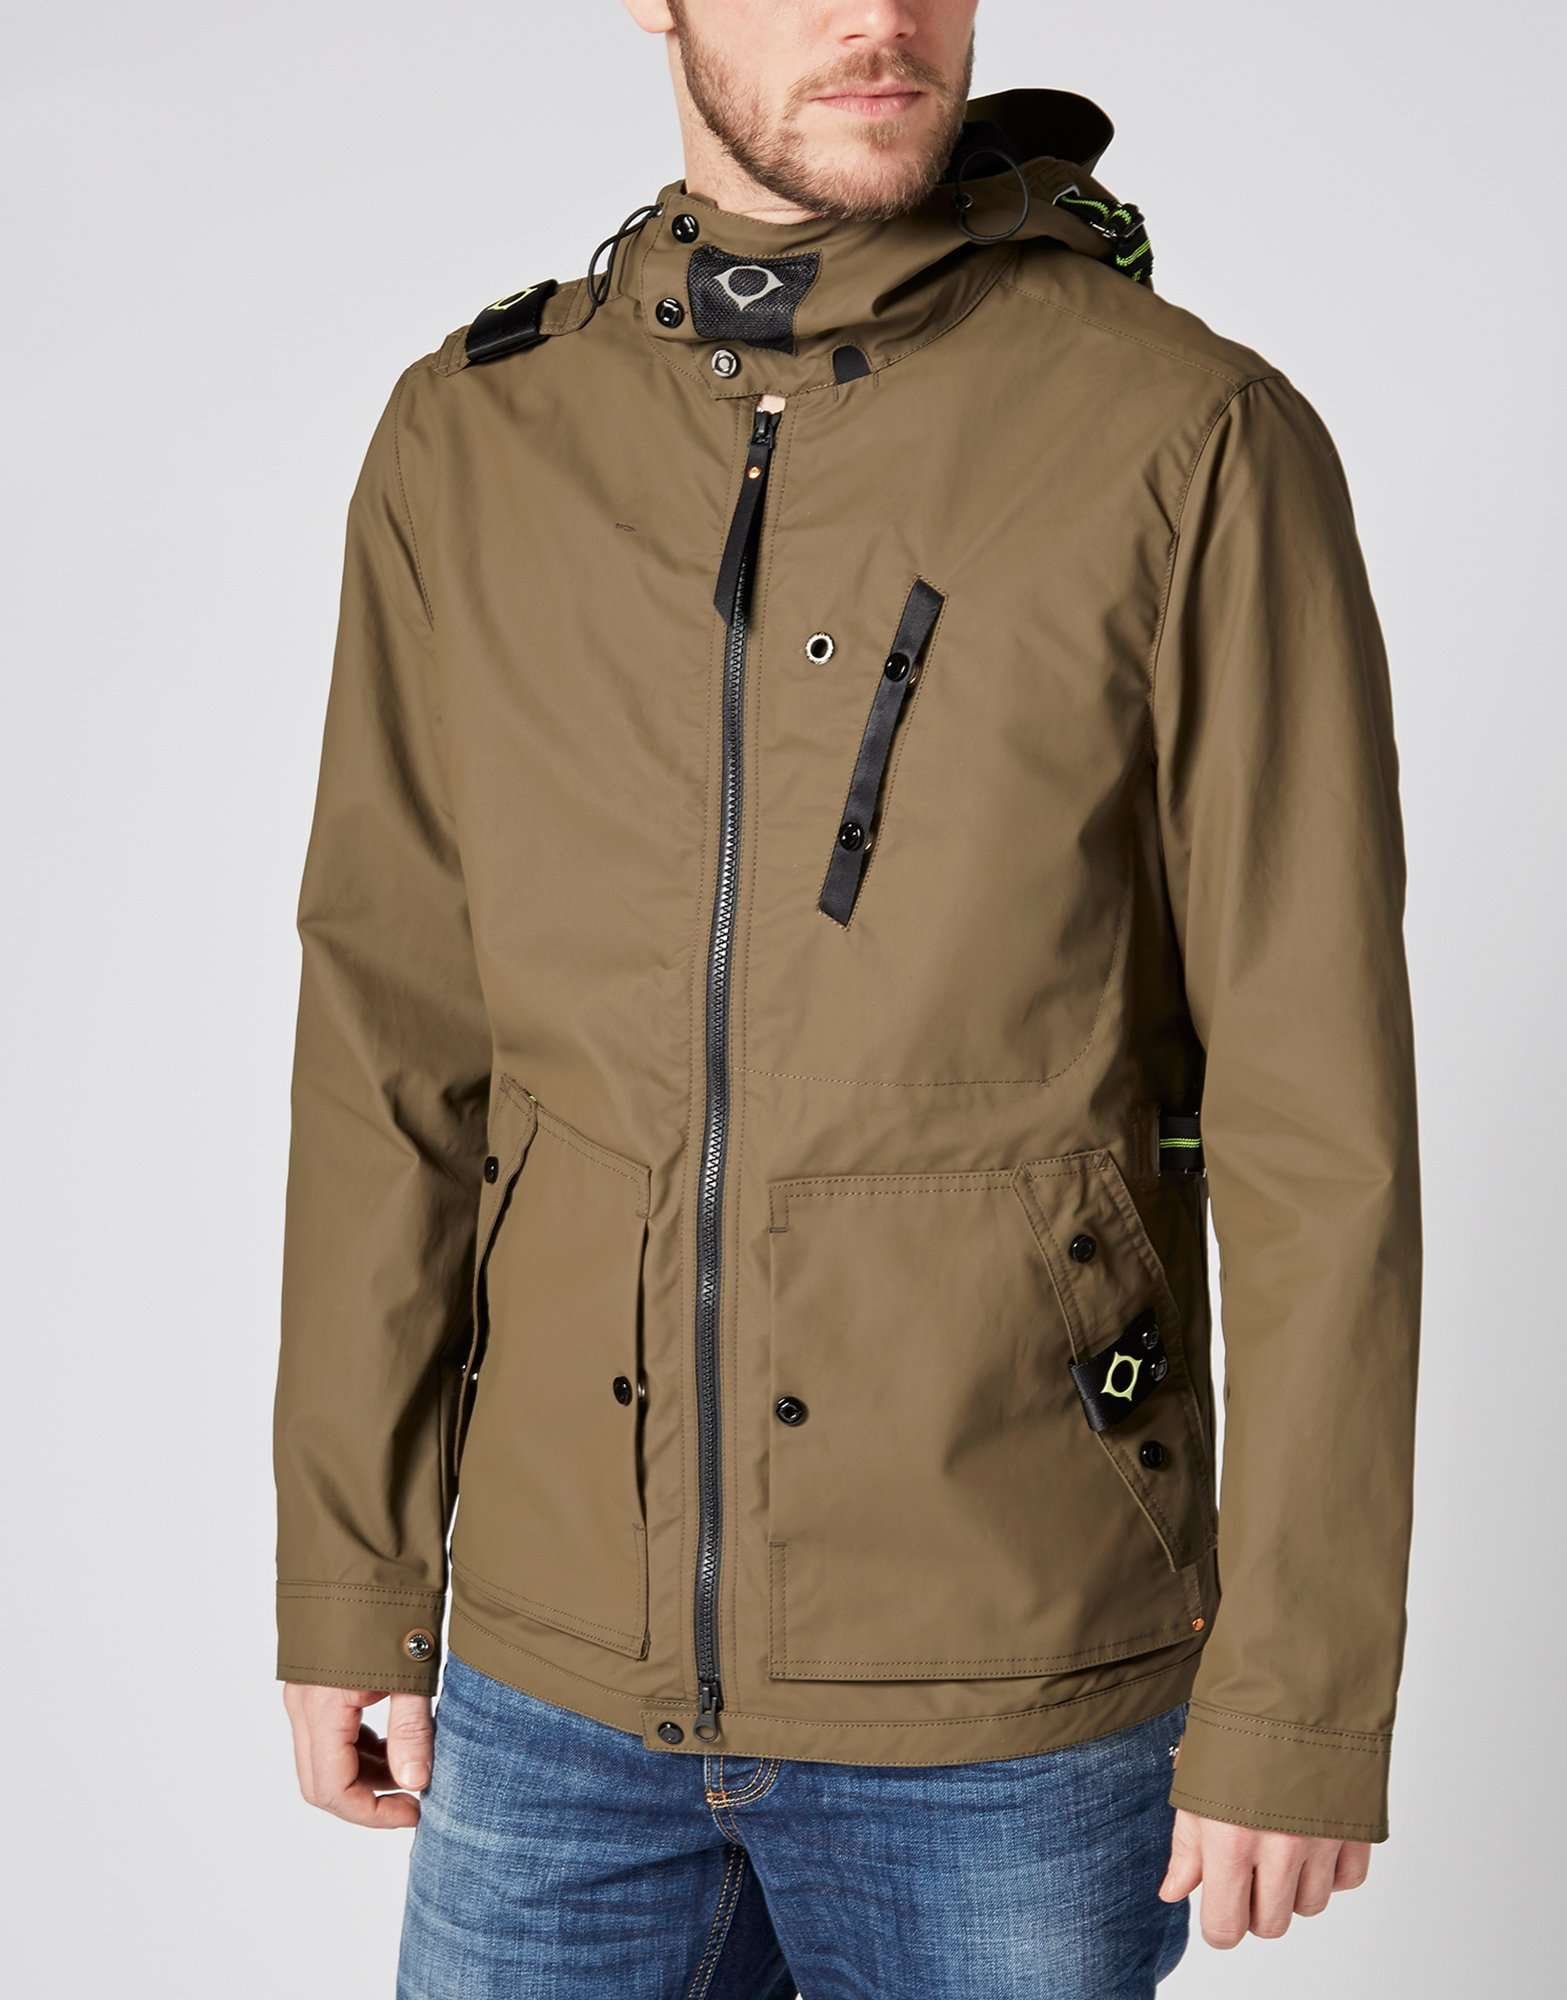 MA STRUM Recon Field Jacket | scotts Menswear